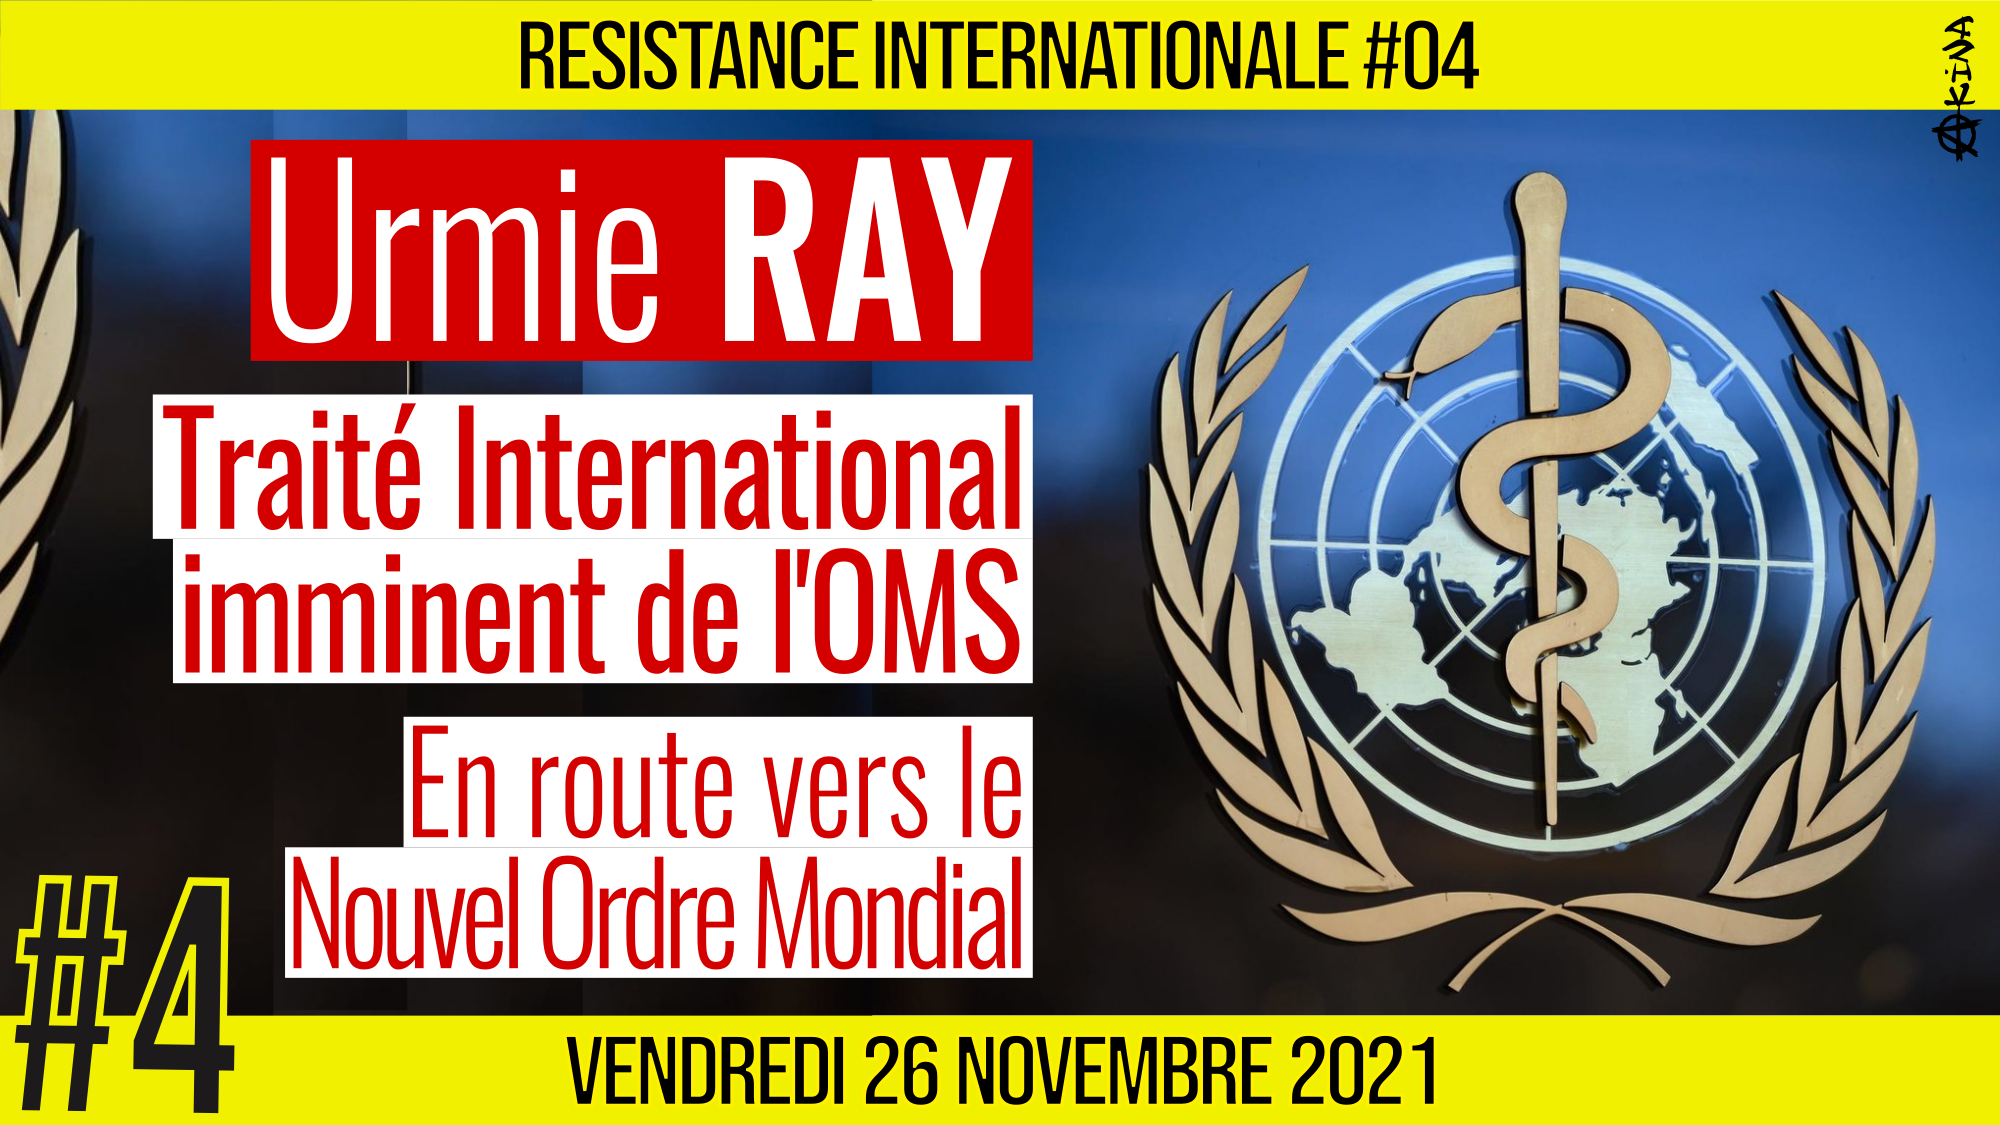 ✊ RÉSISTANCE INTERNATIONALE #04 🗣 Dr. Urmie RAY 🎯 Traité International imminent de l’OMS 📆 26-11-2021